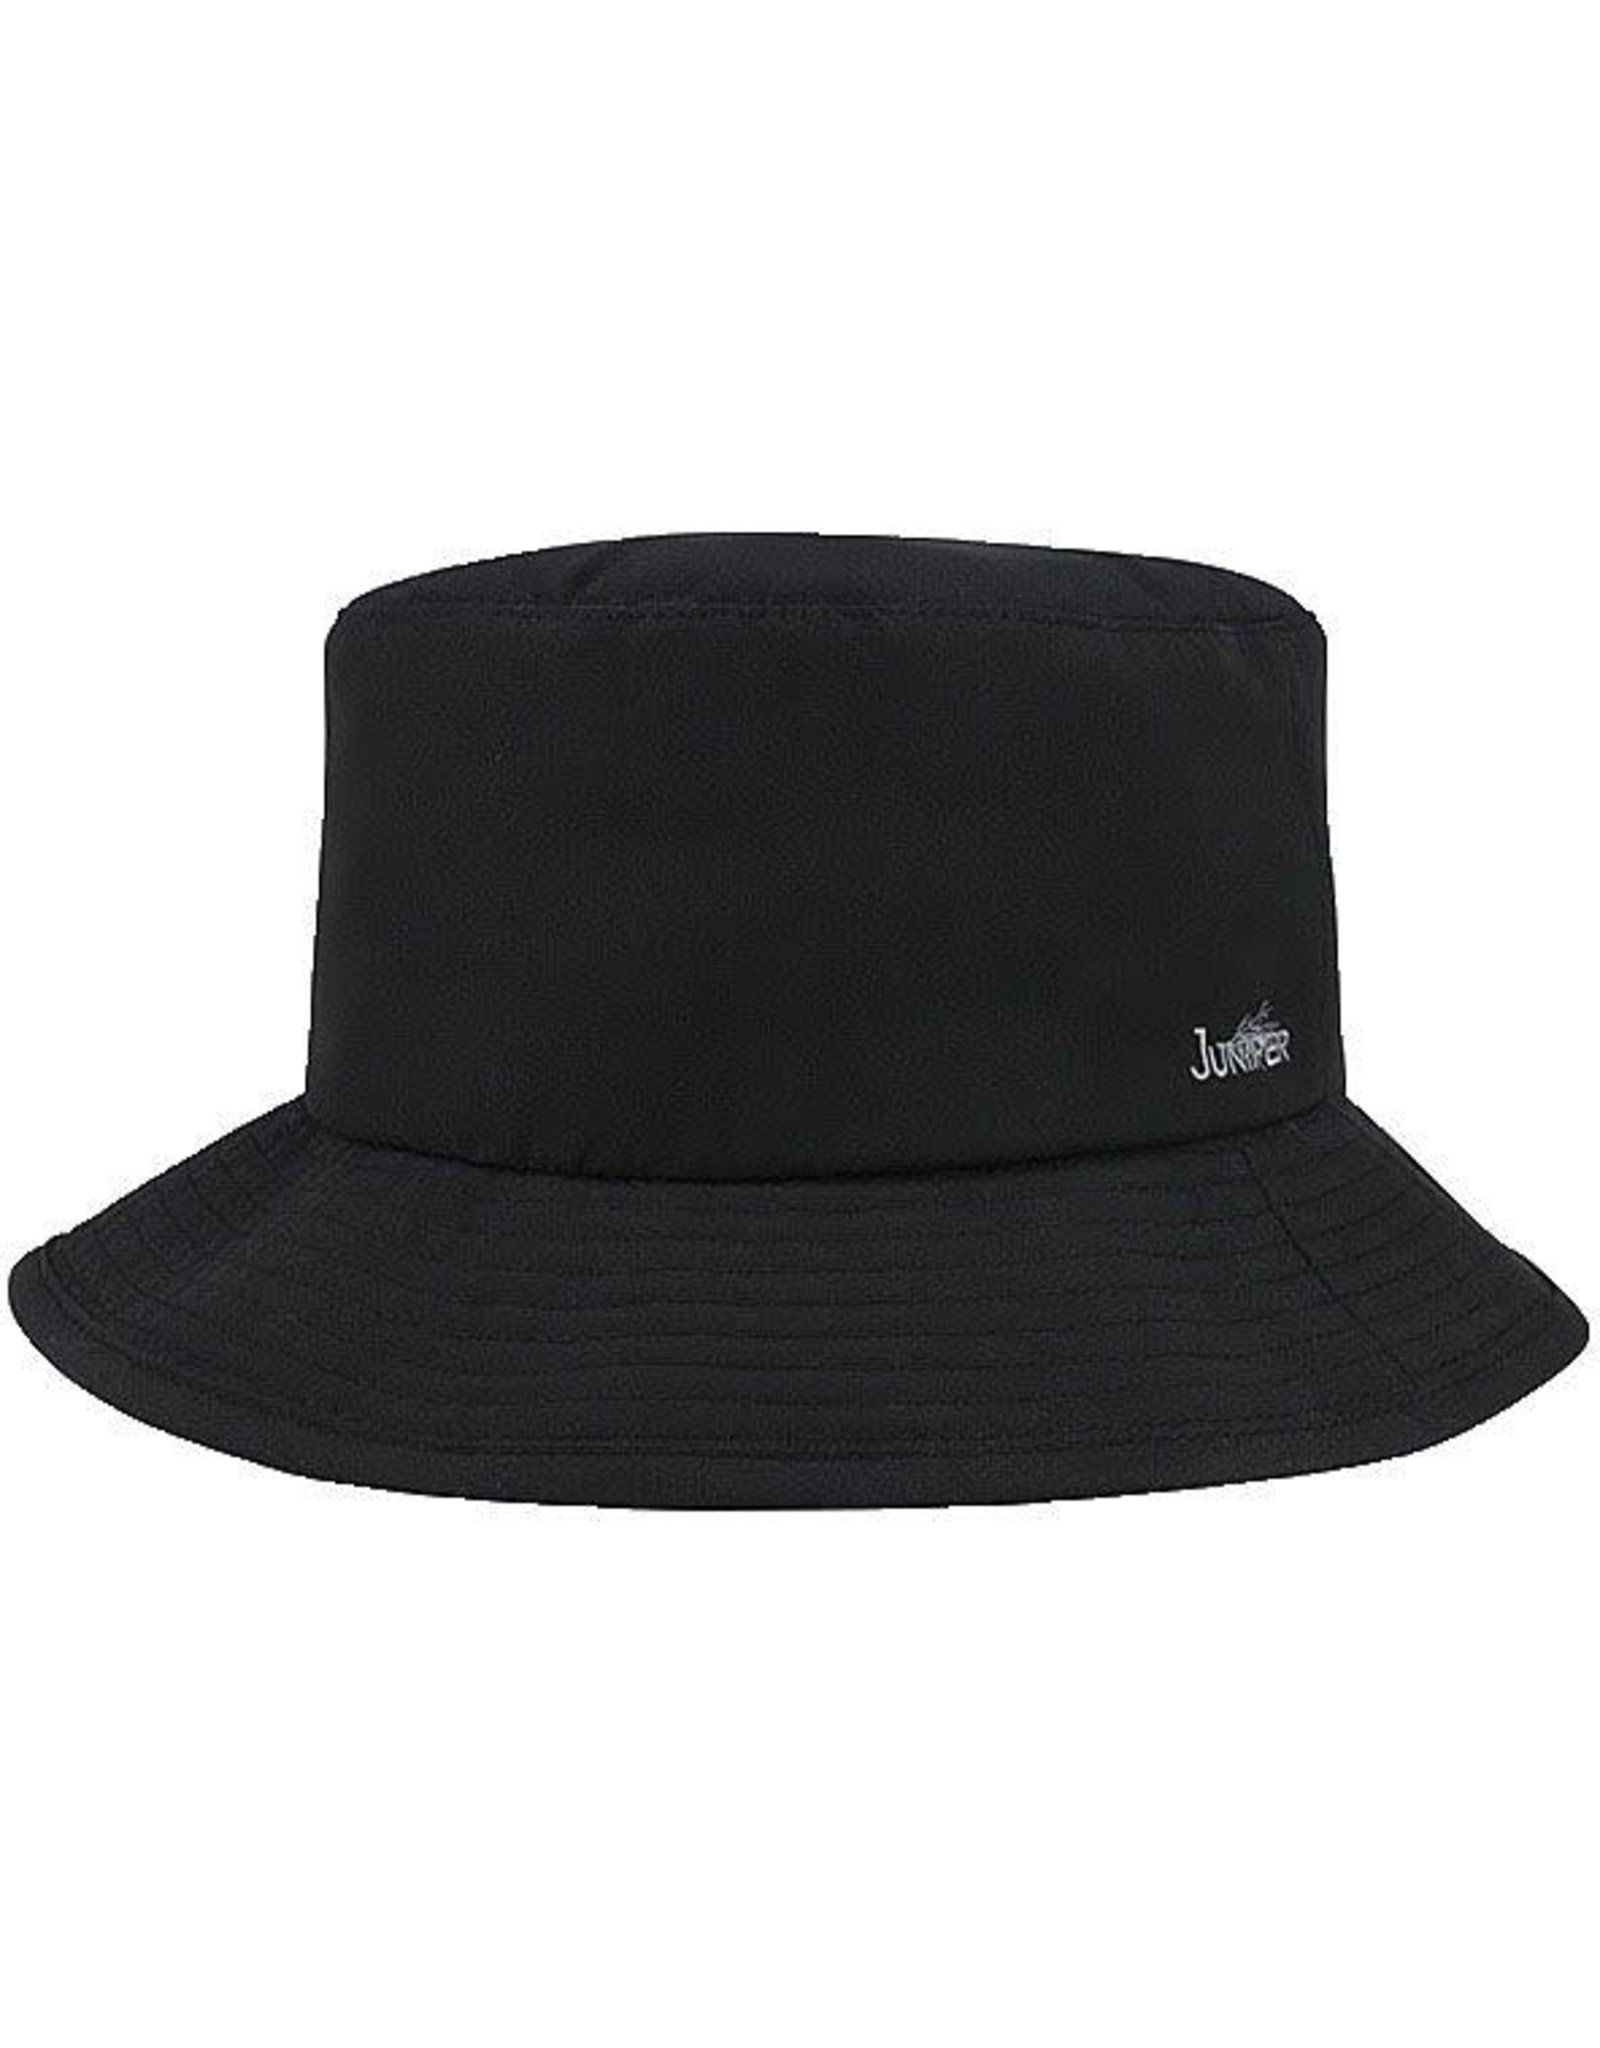 Covert Packable UV Bucket Hat